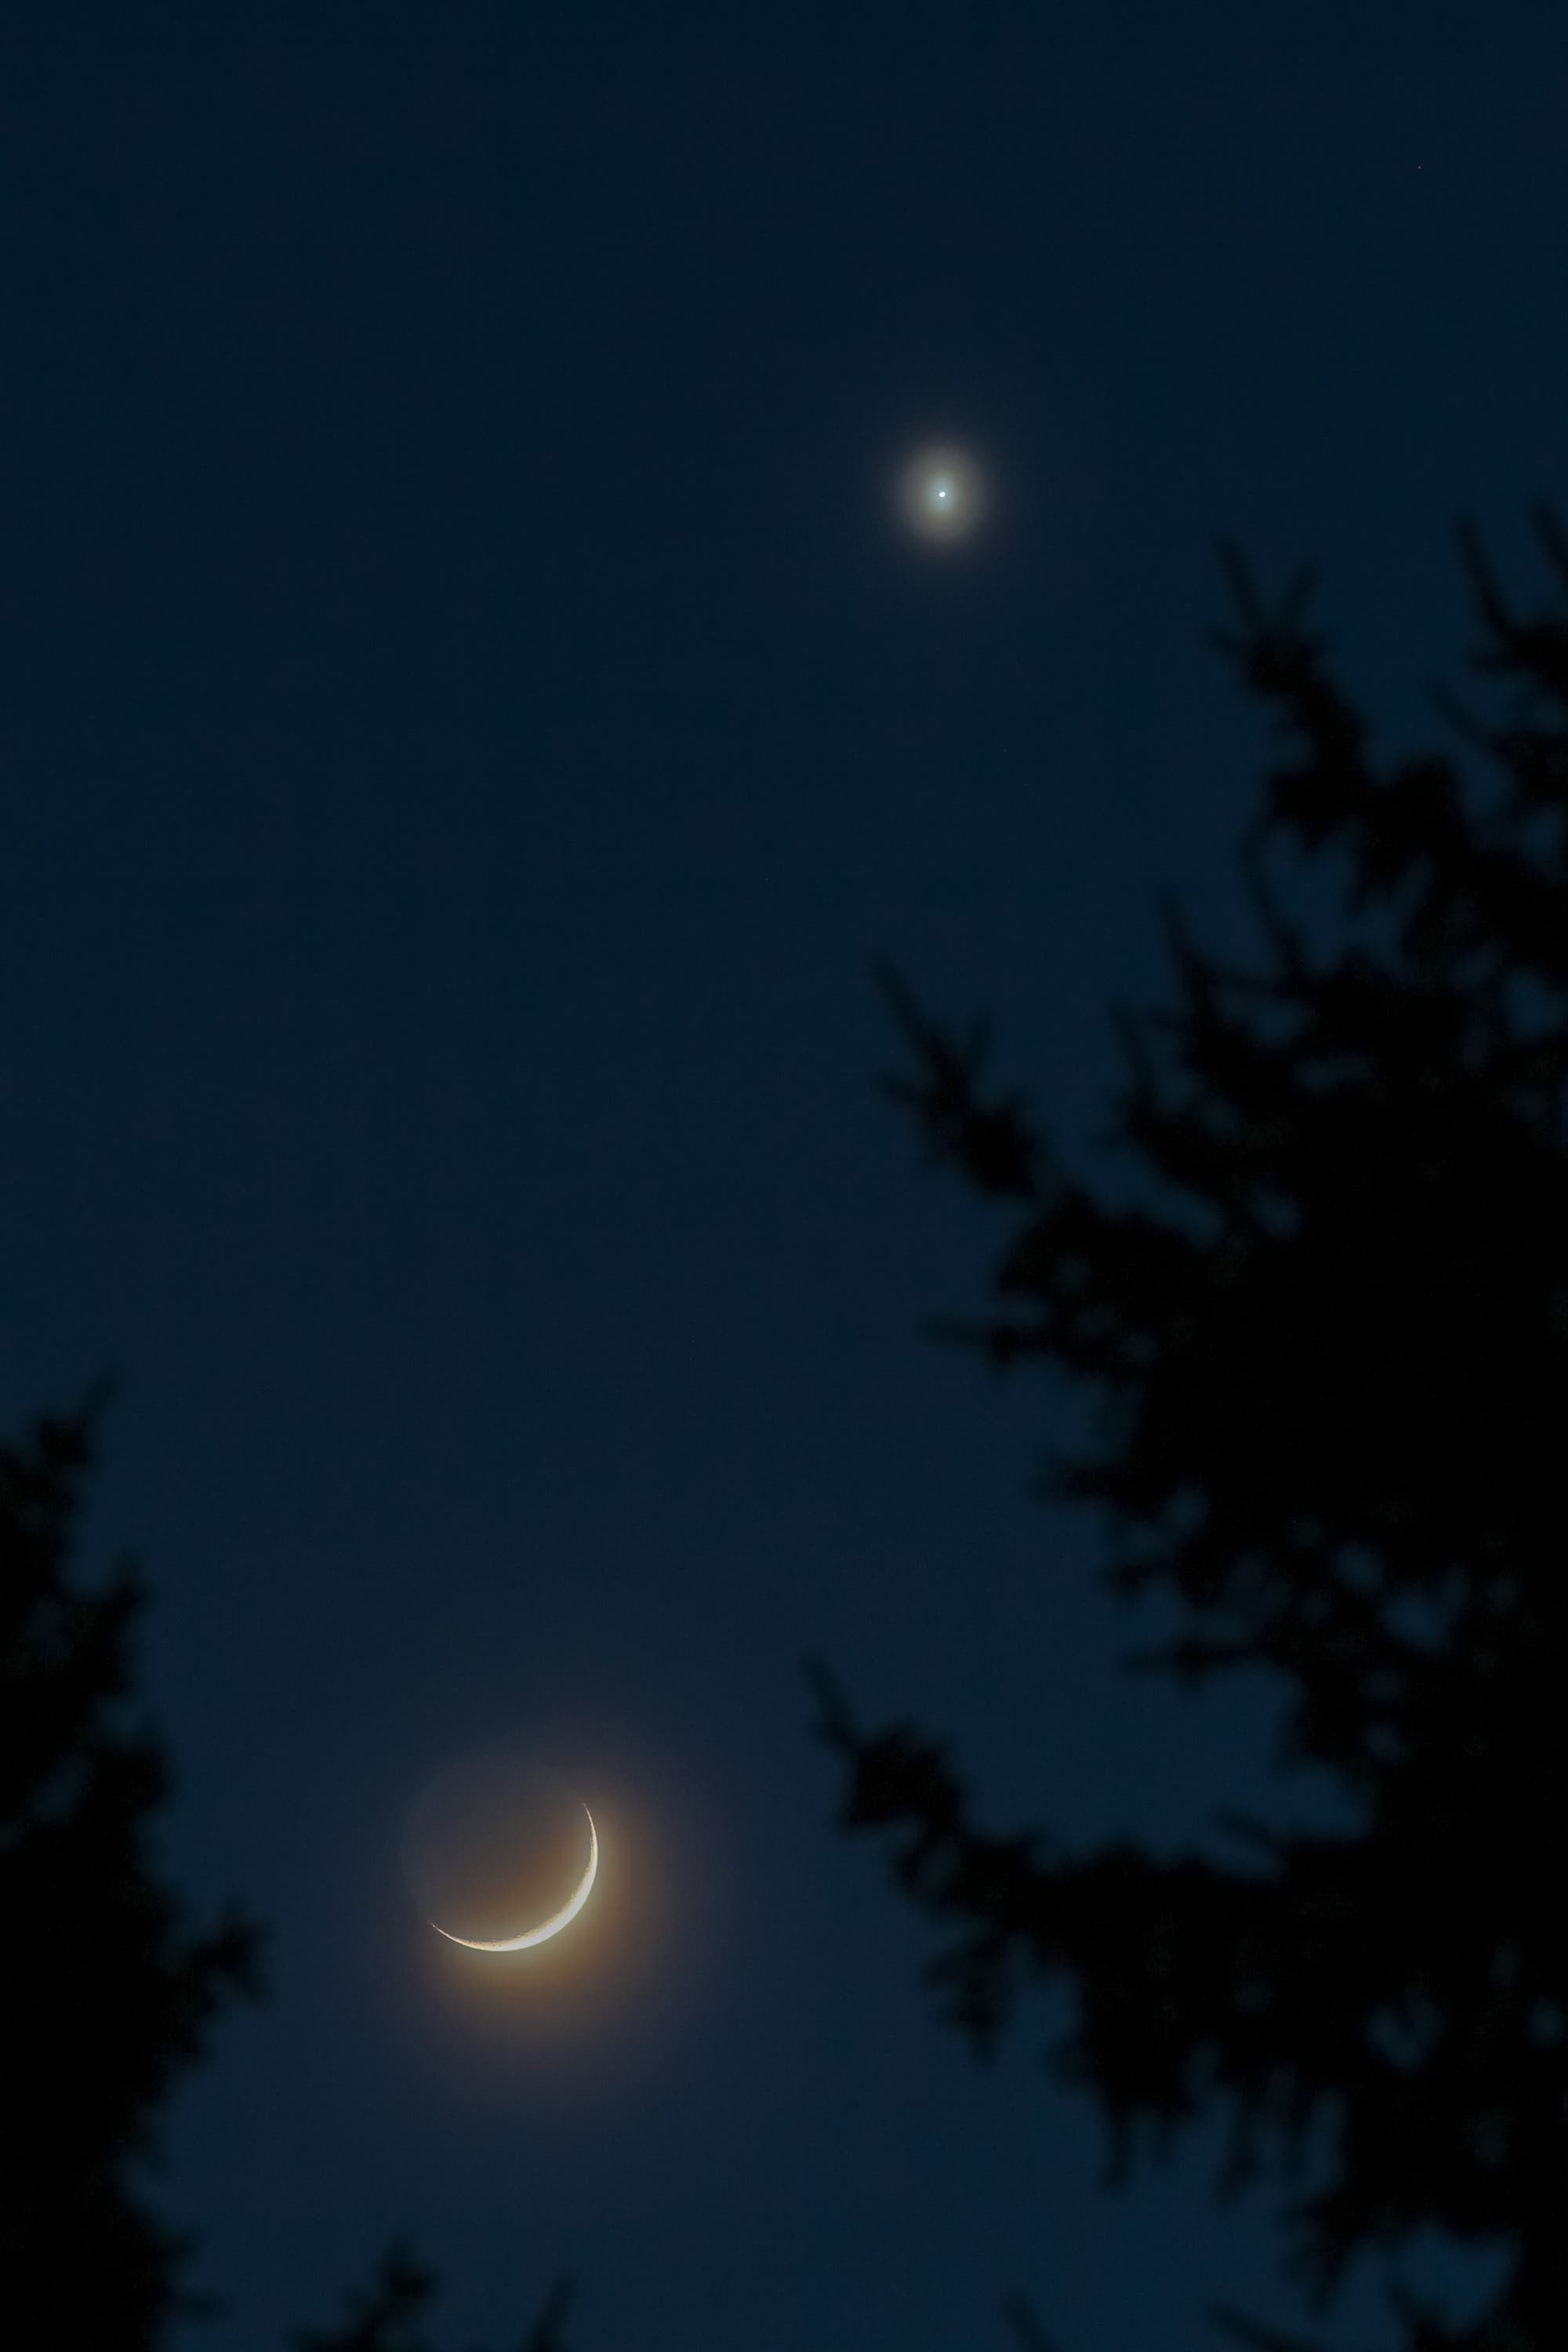 Mond und Venus mit Venus-Aureole